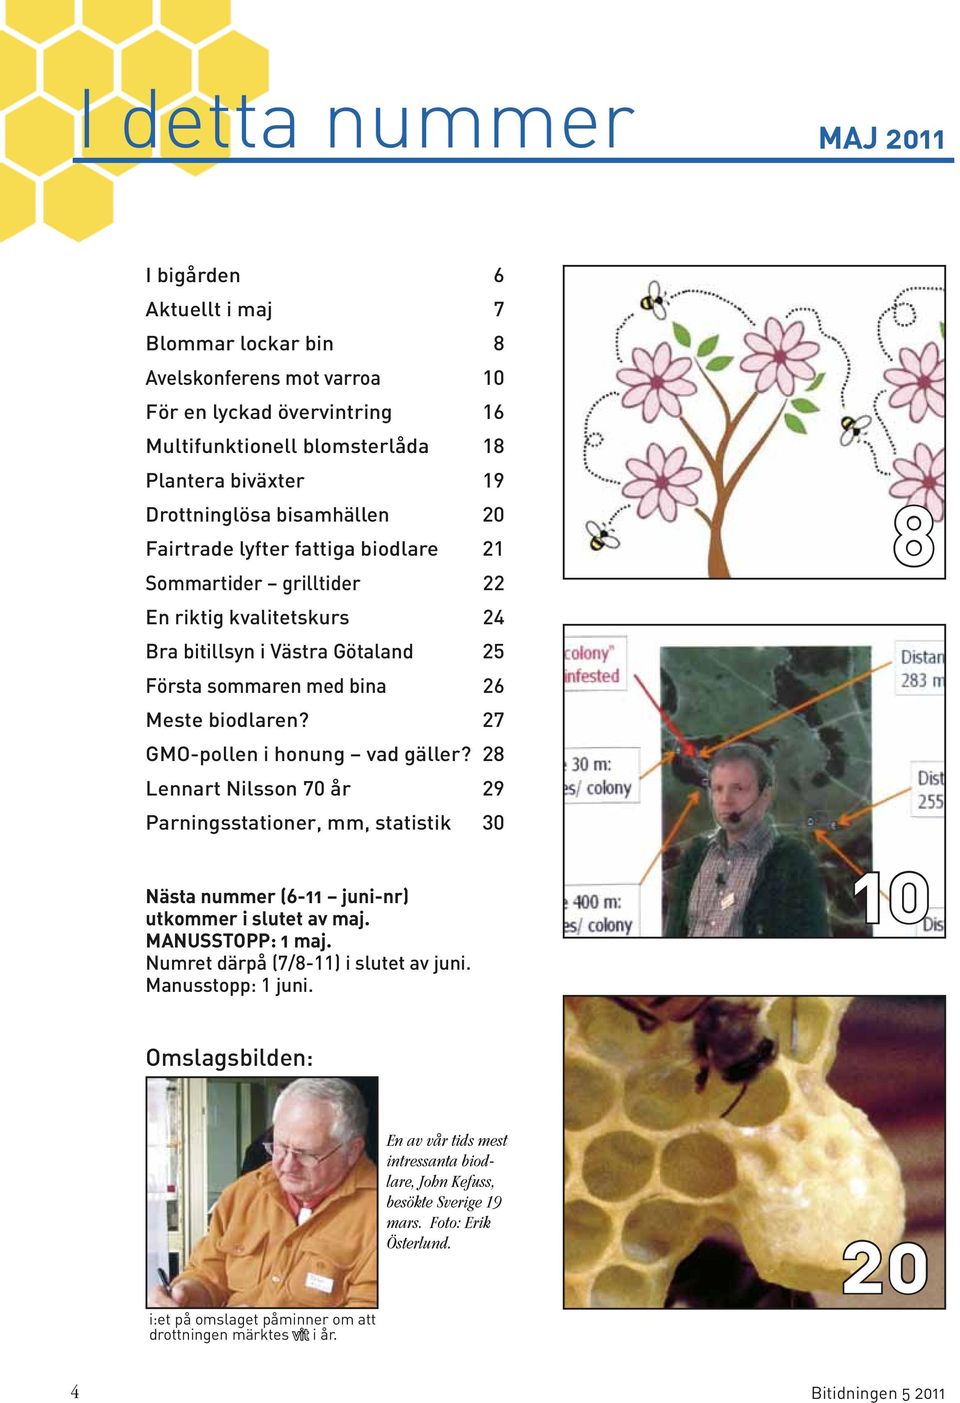 27 GMO-pollen i honung vad gäller? 28 Lennart Nilsson 70 år 29 Parningsstationer, mm, statistik 30 Nästa nummer (6-11 juni-nr) utkommer i slutet av maj. MANUSSTOPP: 1 maj.